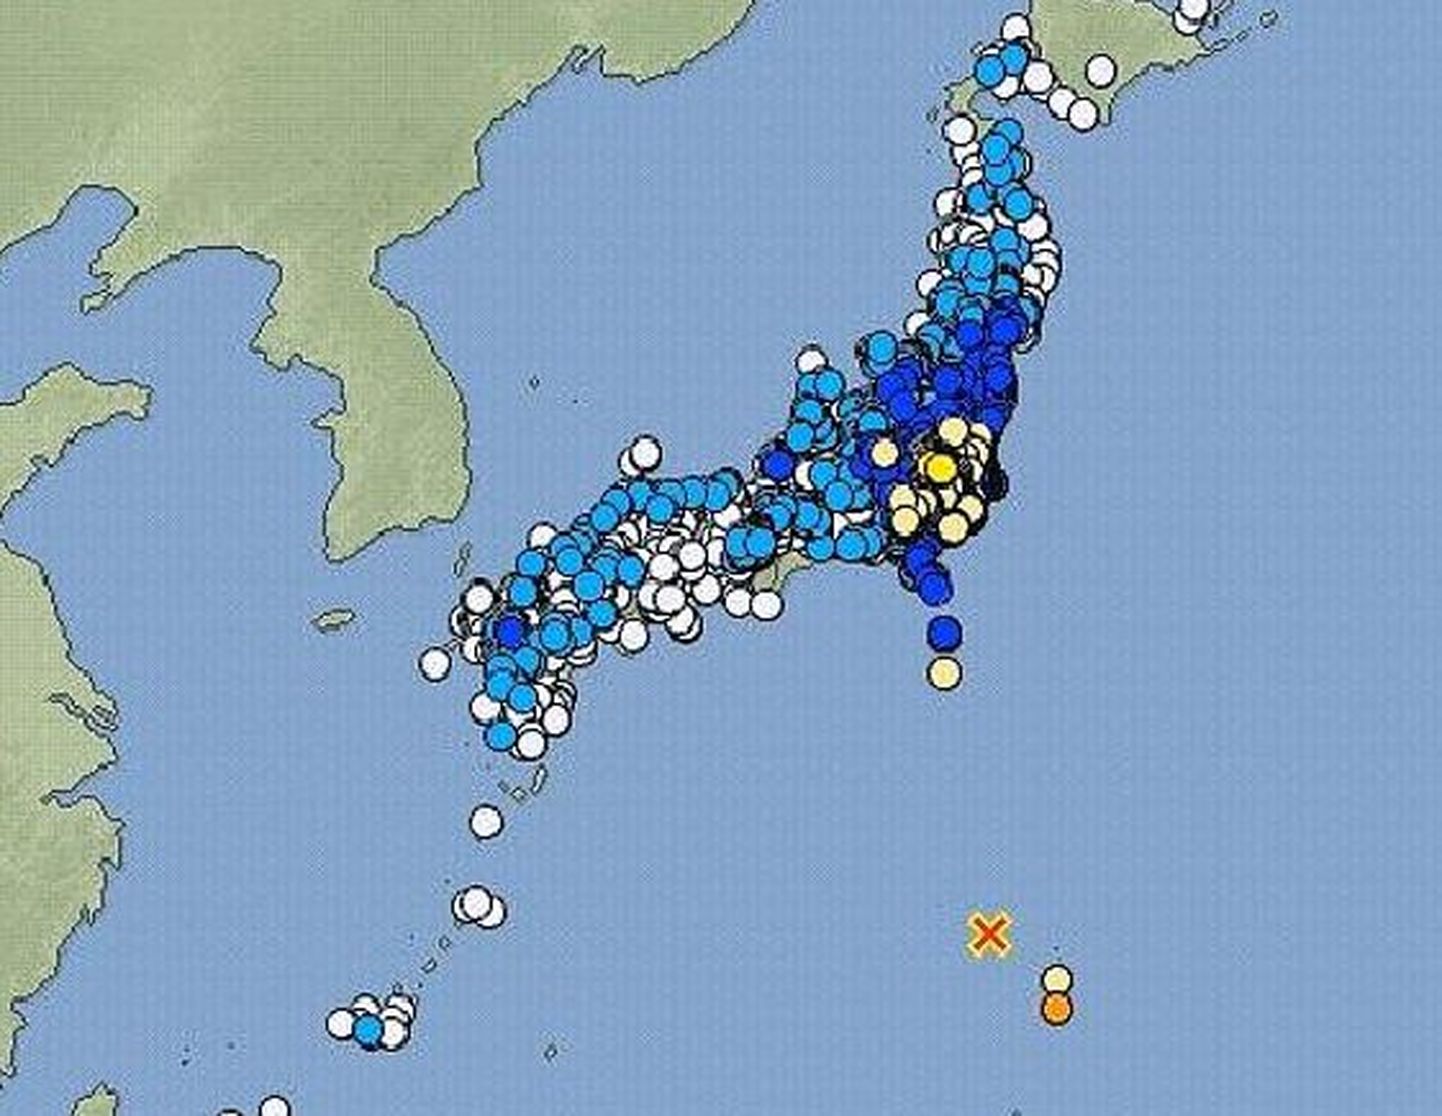 Rist märgib täna toimunud võimsa veealuse maavärina asukohta.